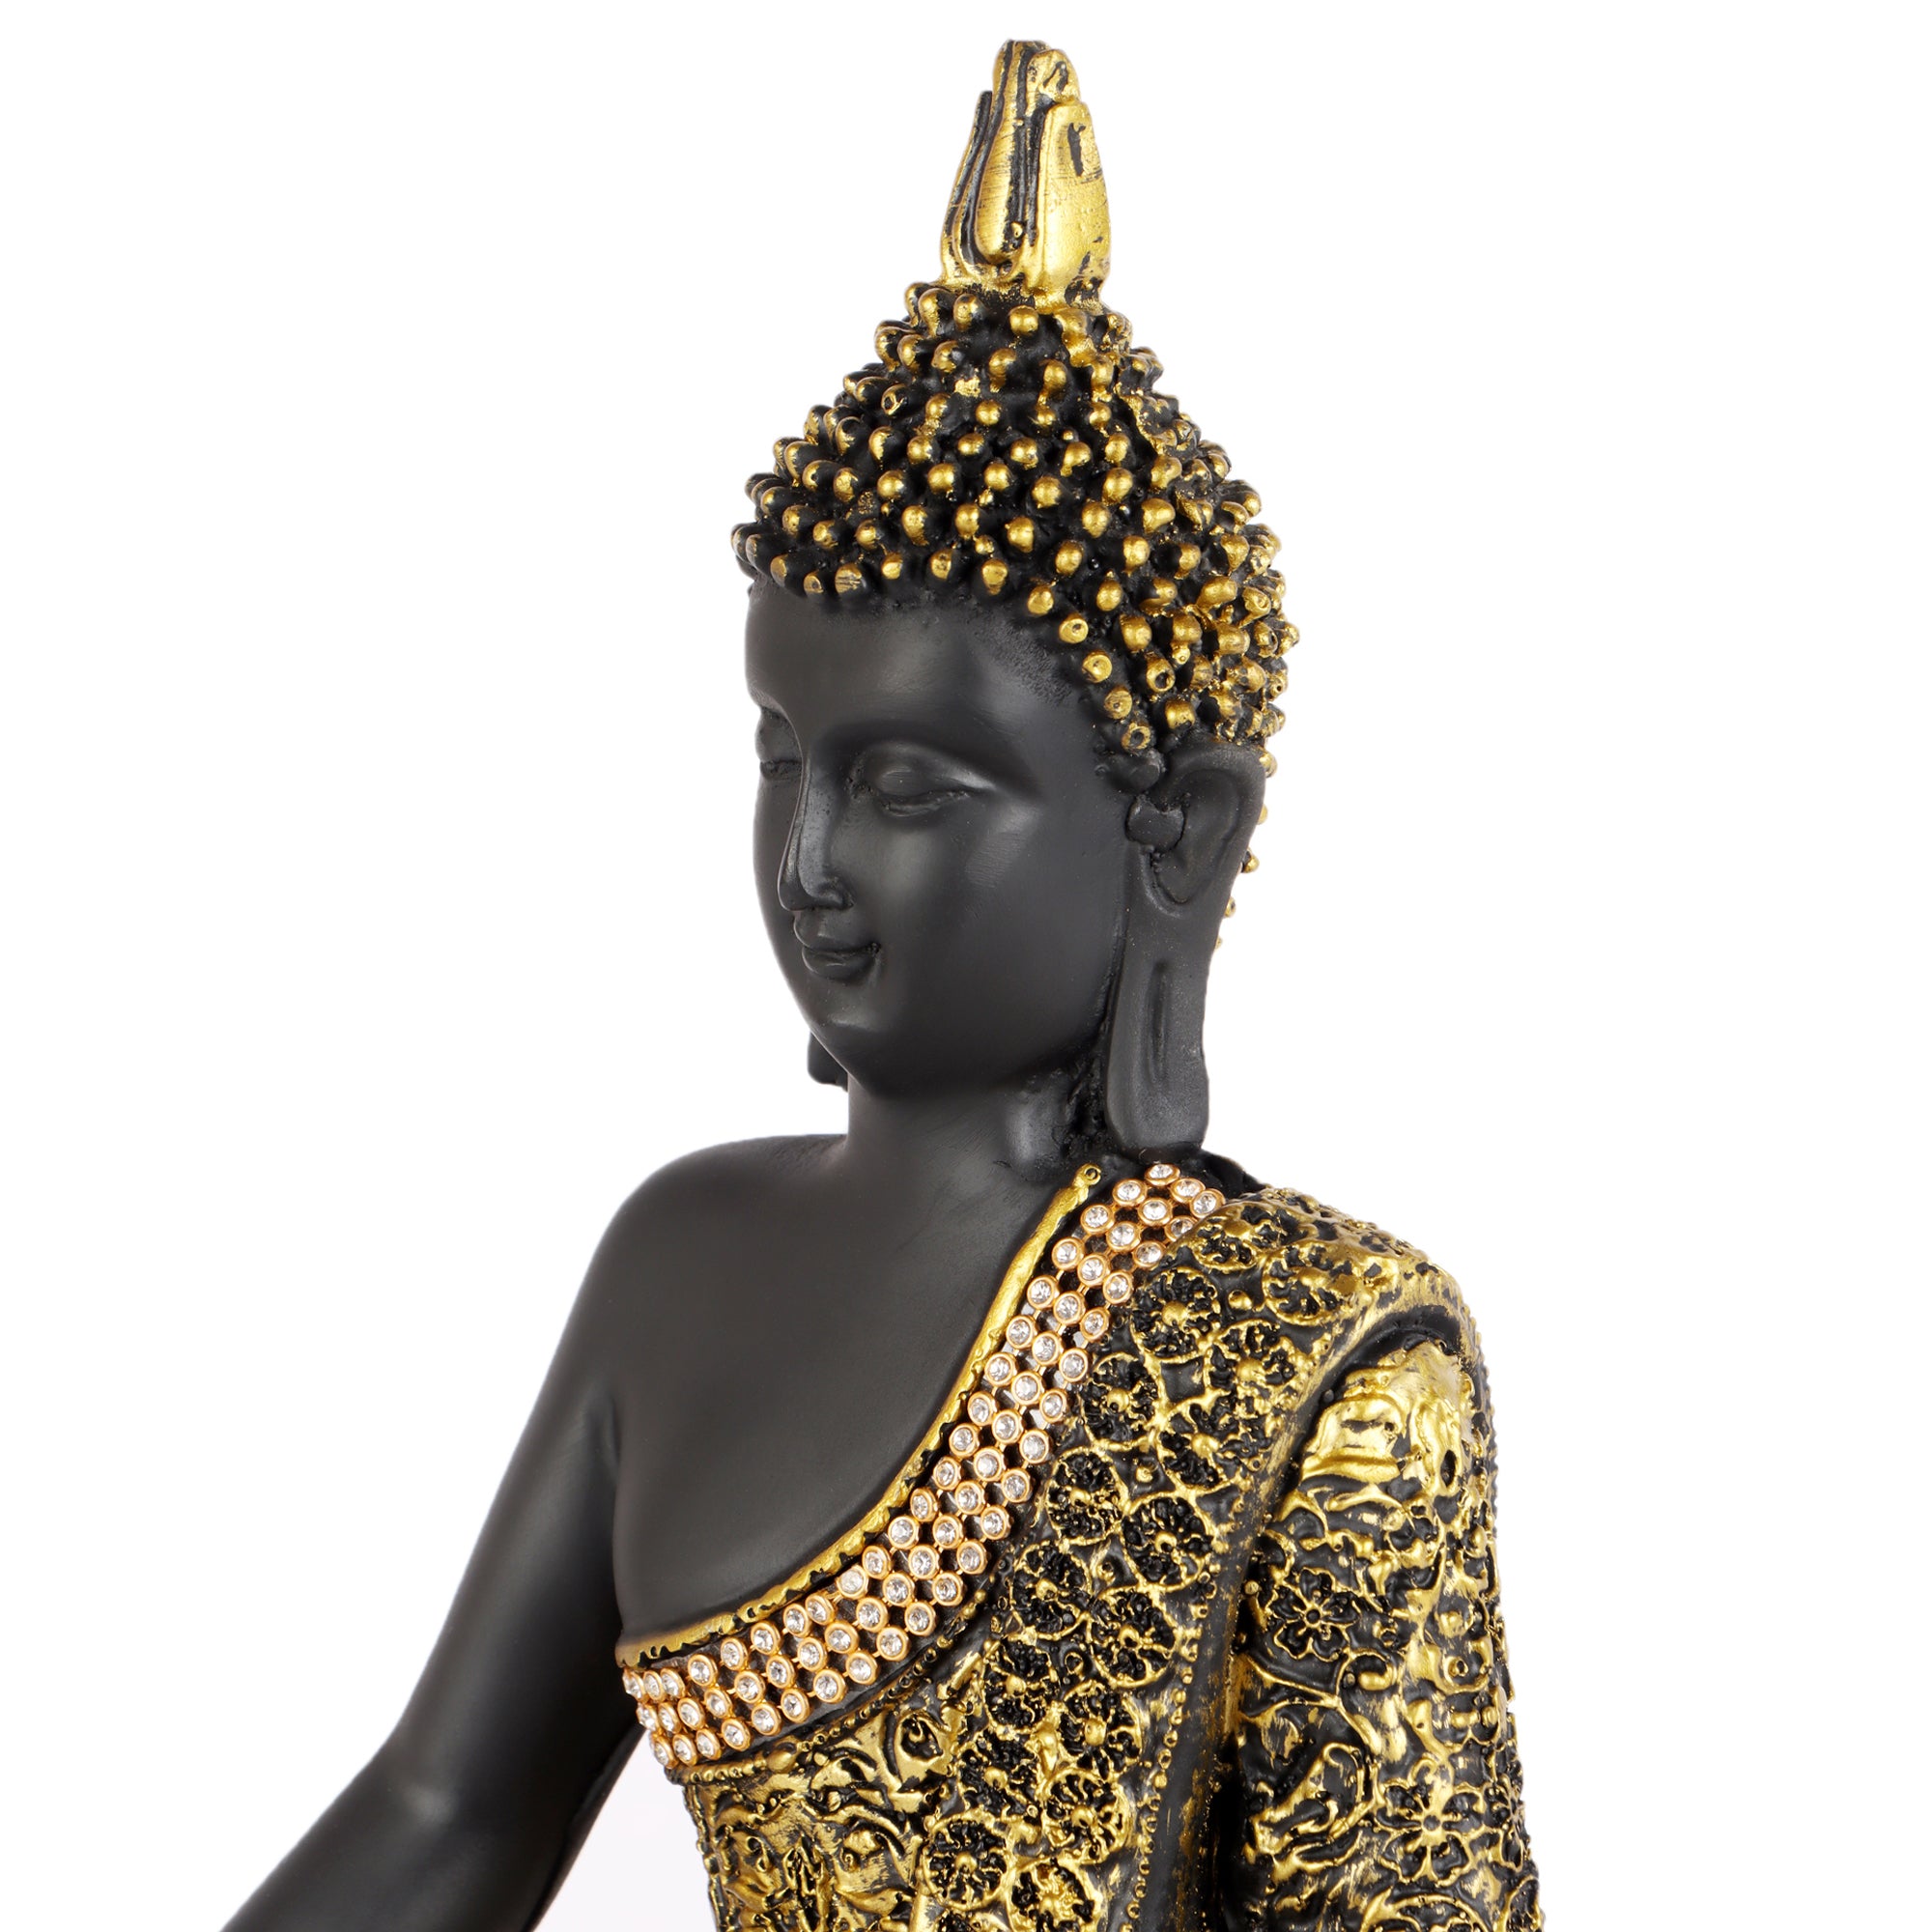 Embellished Meditating Buddha